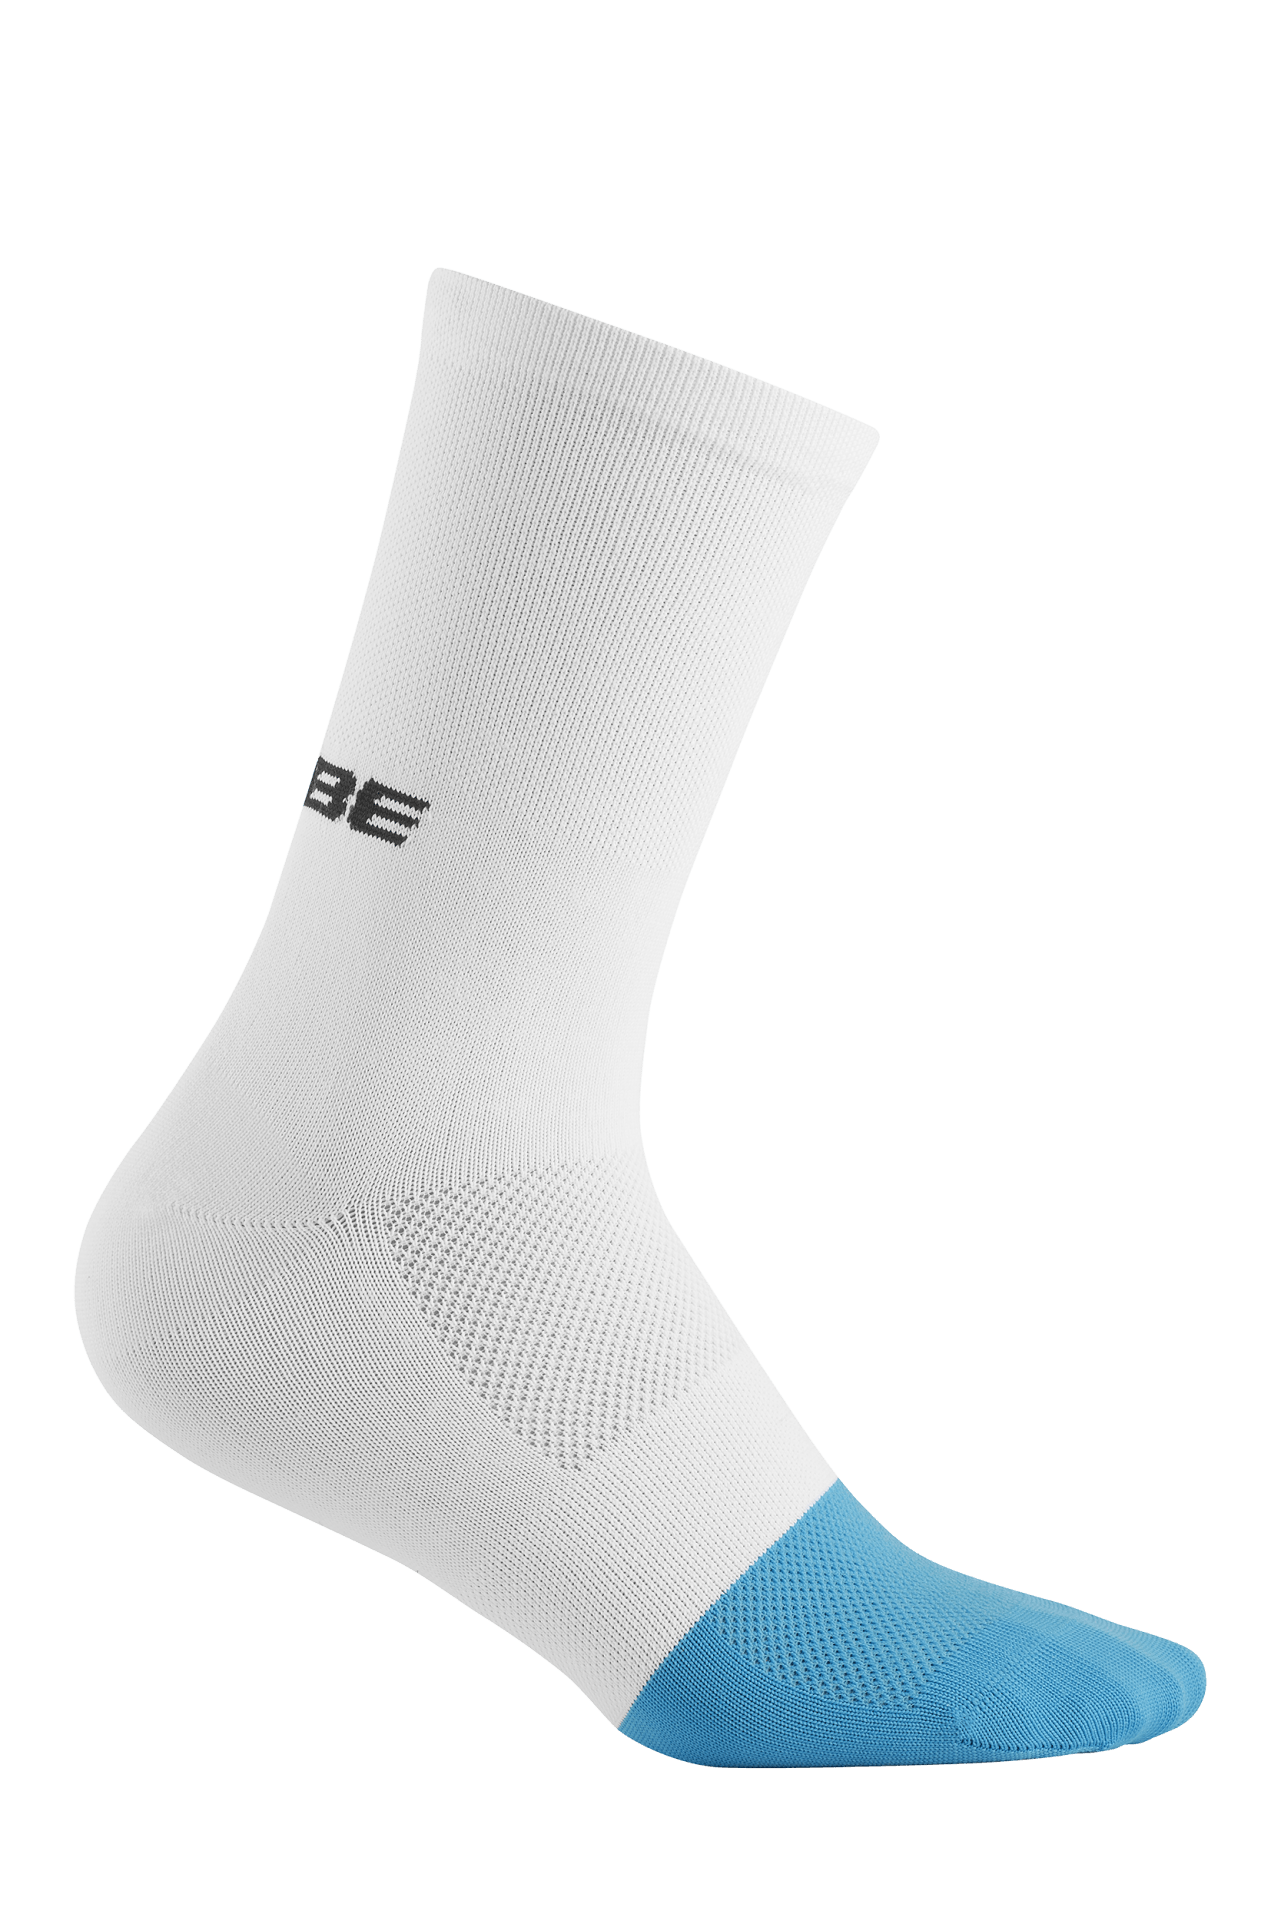 CUBE Socke High Cut Teamline white´n´blue 36-39